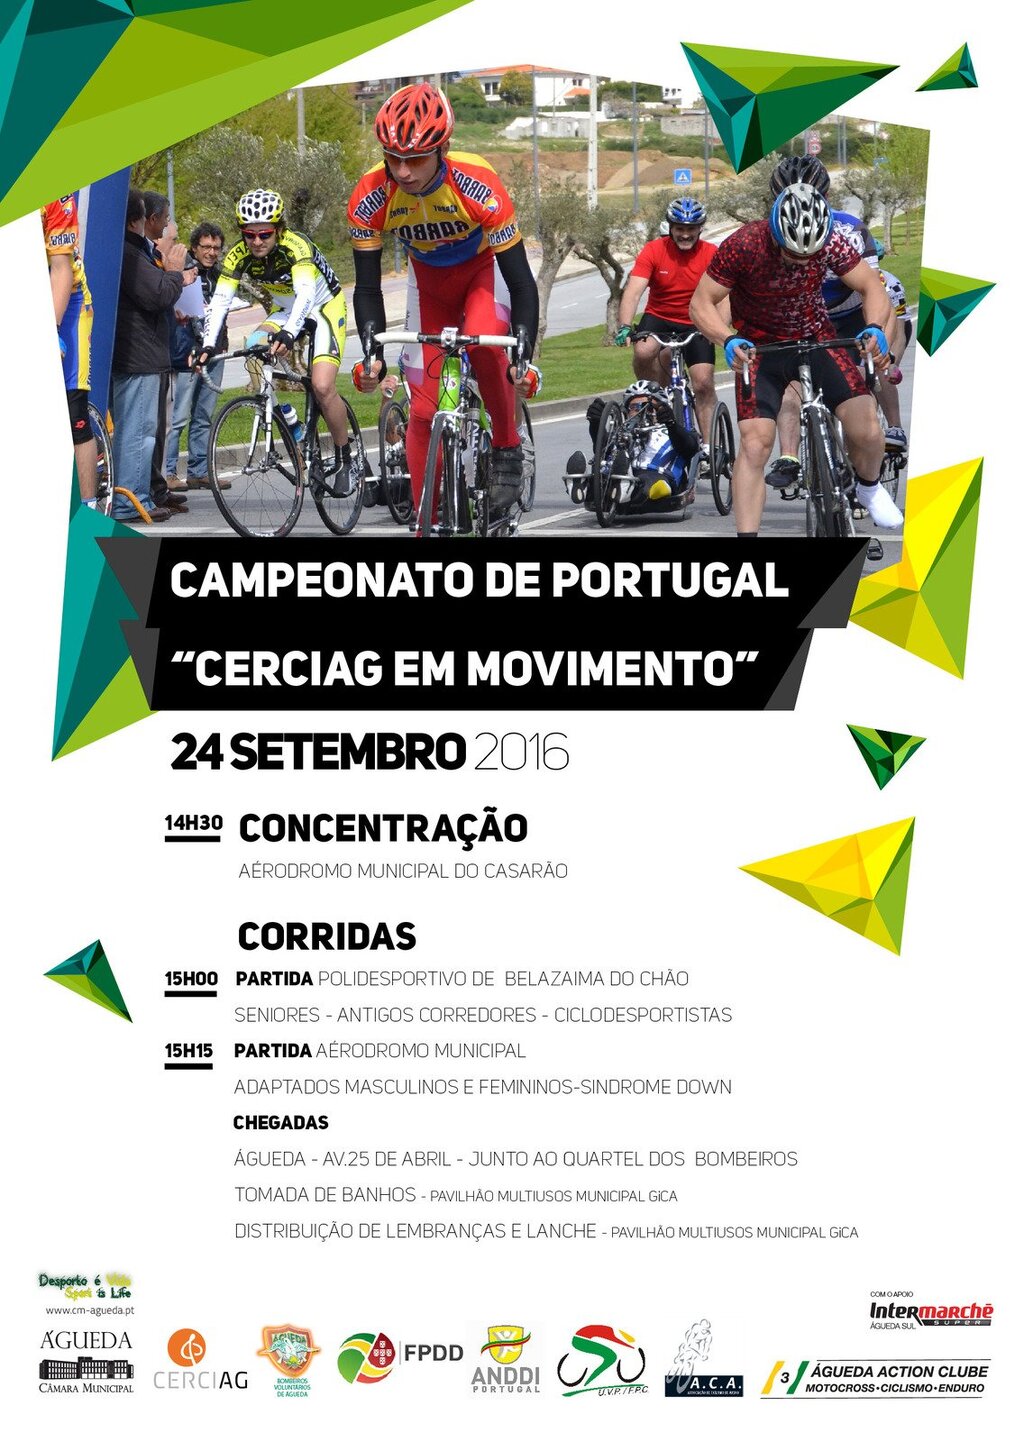 Campeonato de Portugal de Ciclismo ANDDI 2016 – Circuito de Águeda